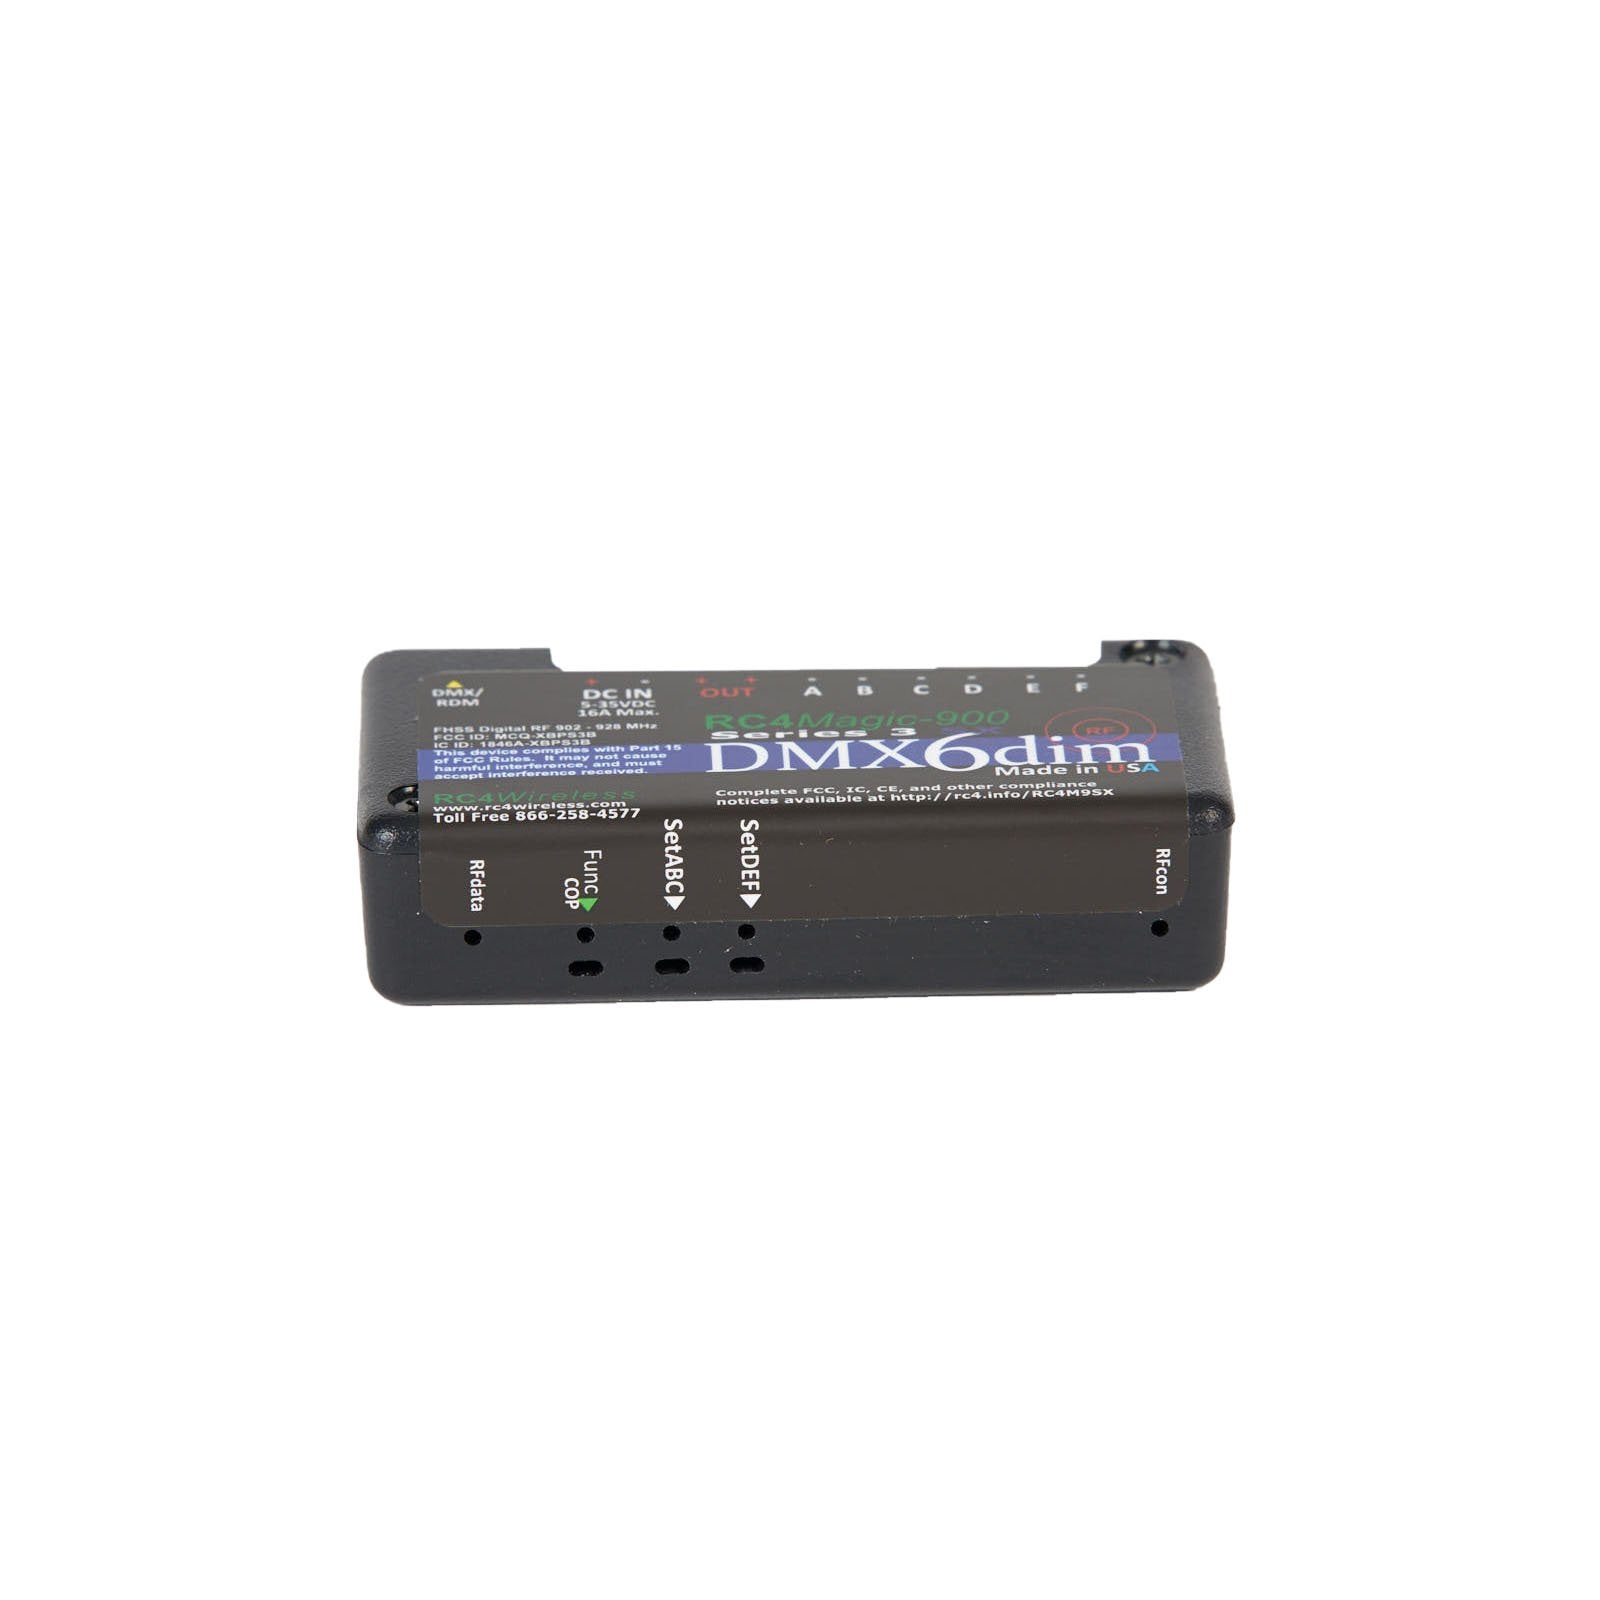 RC4M-900SX DMX6dim 6-Channel Wireless Dimmer